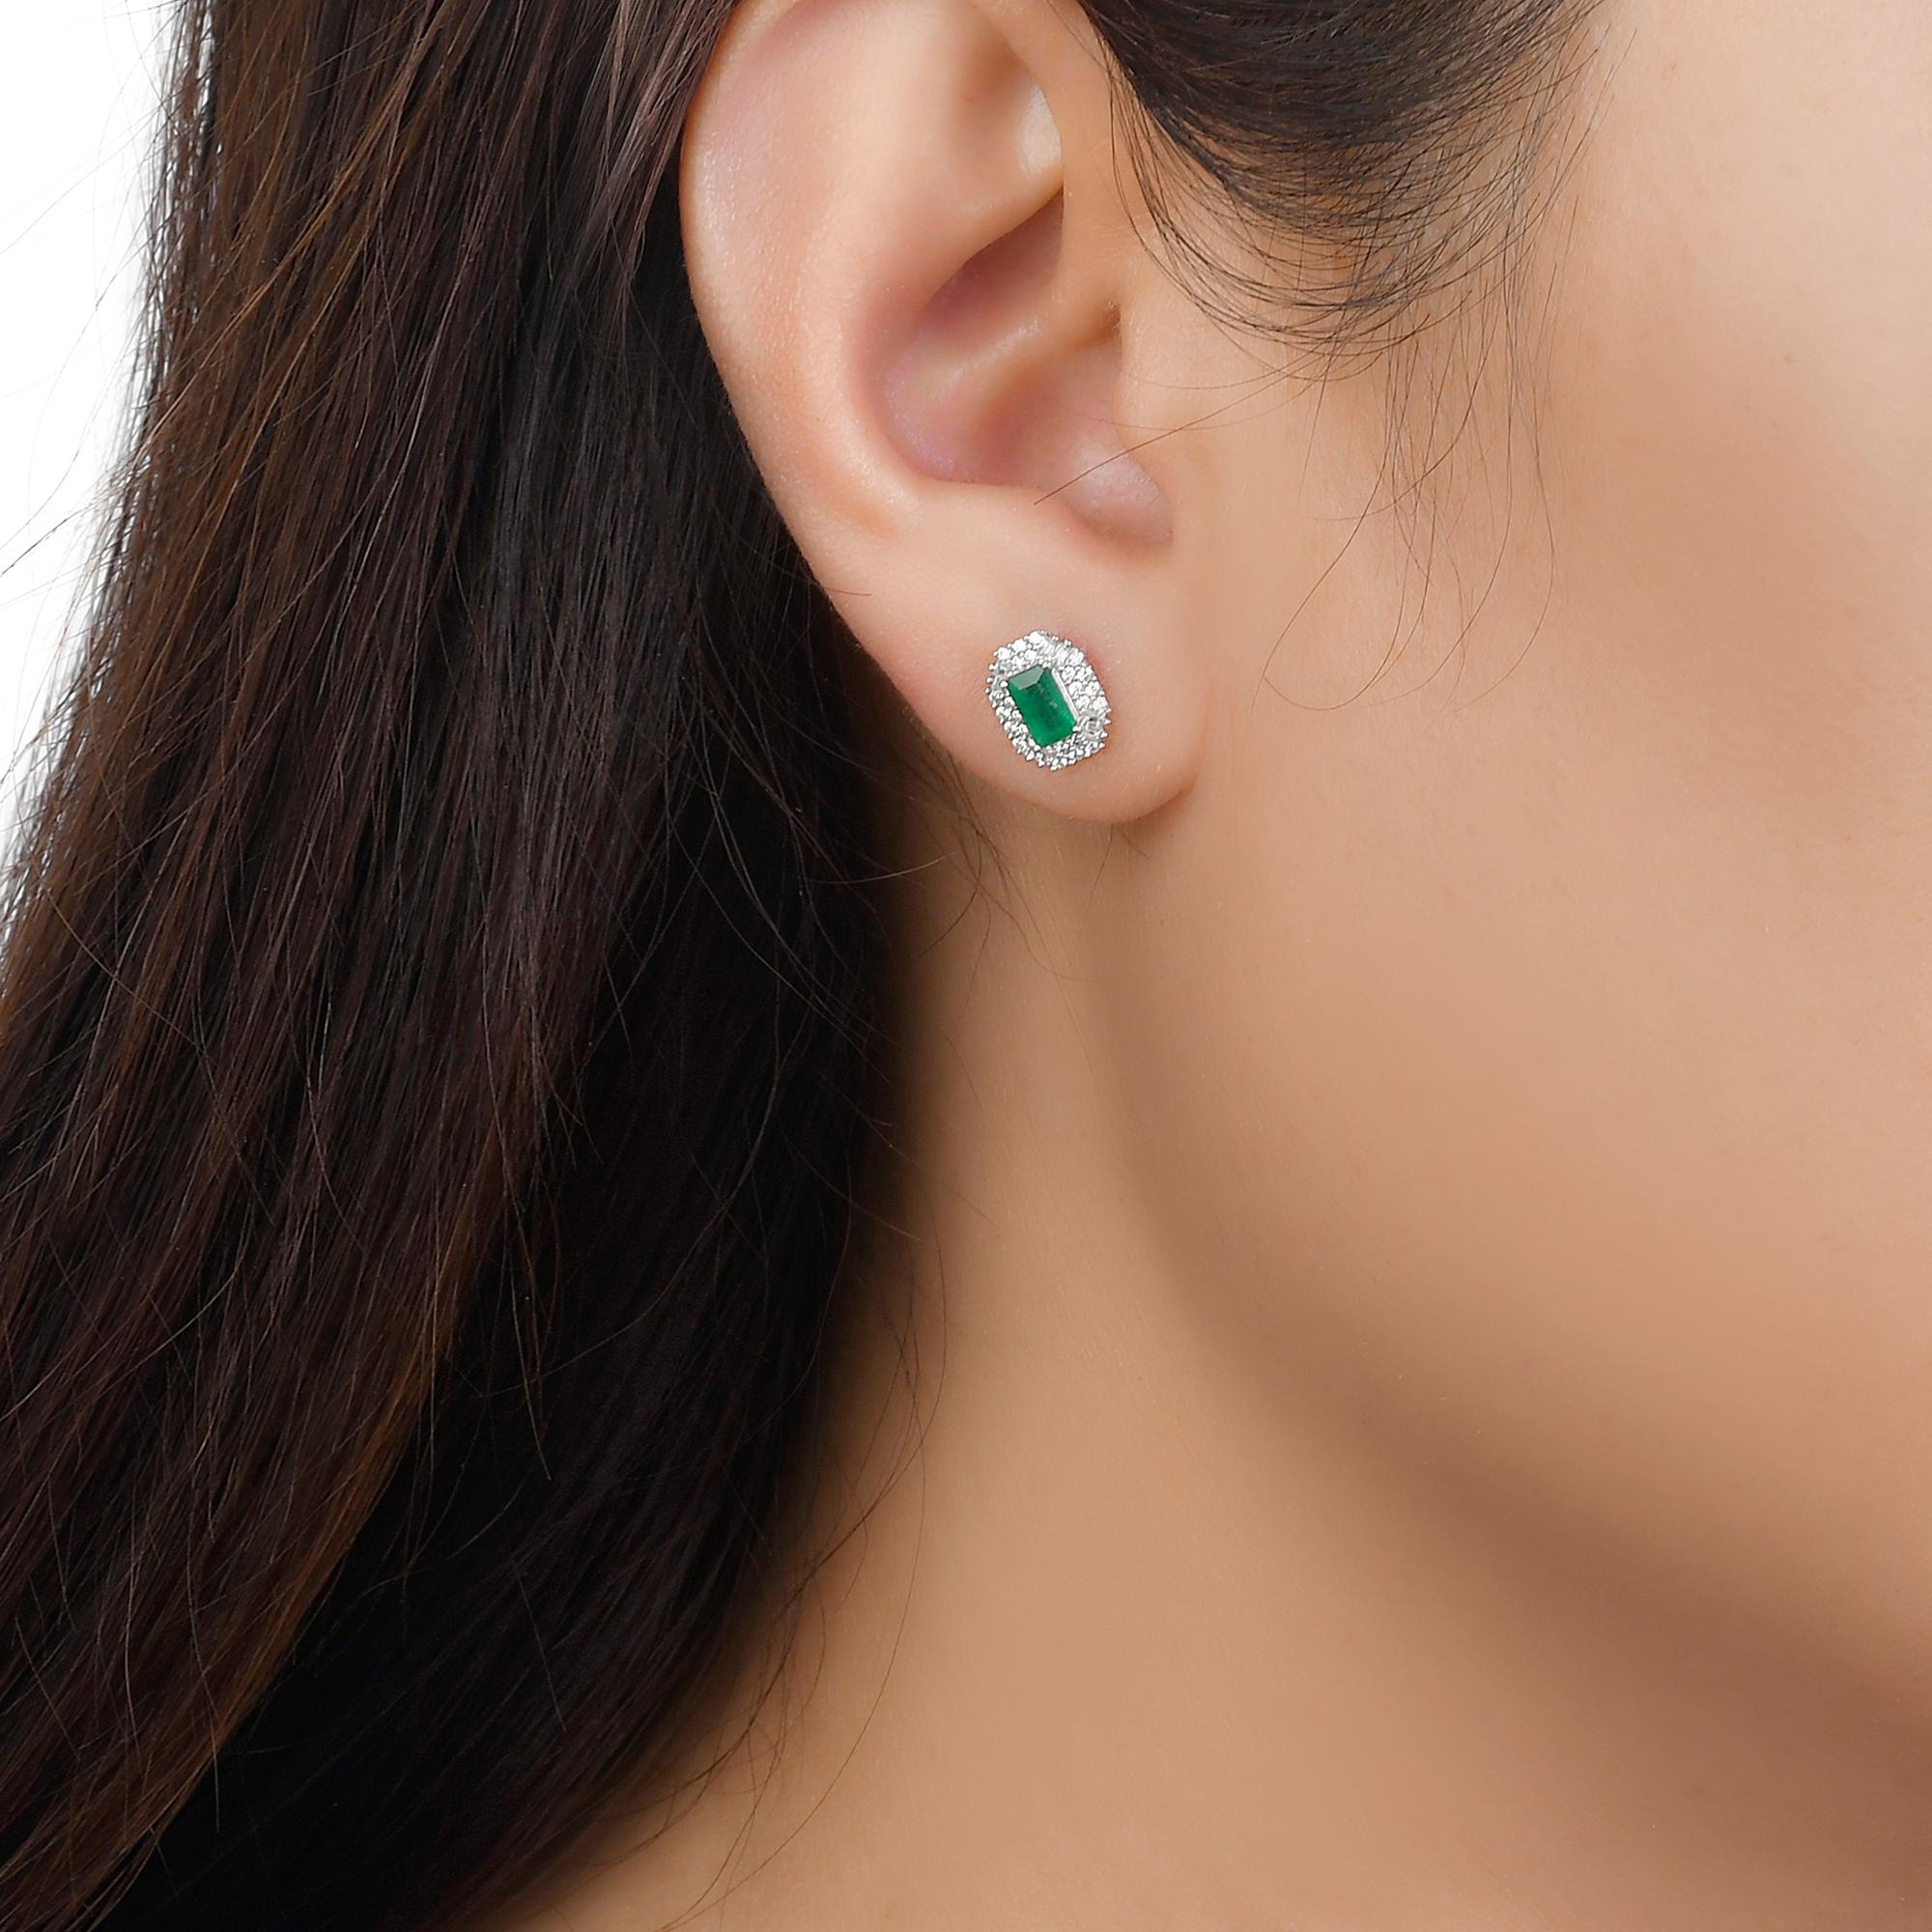 Gönnen Sie sich Luxus mit unseren doppelten Halo-Ohrsteckern mit Smaragd und Diamant. Diese Smaragd-Ohrstecker sind mit atemberaubenden Rubinen im Baguetteschliff besetzt und strahlen Raffinesse und Exklusivität aus. Das schillernde doppelte